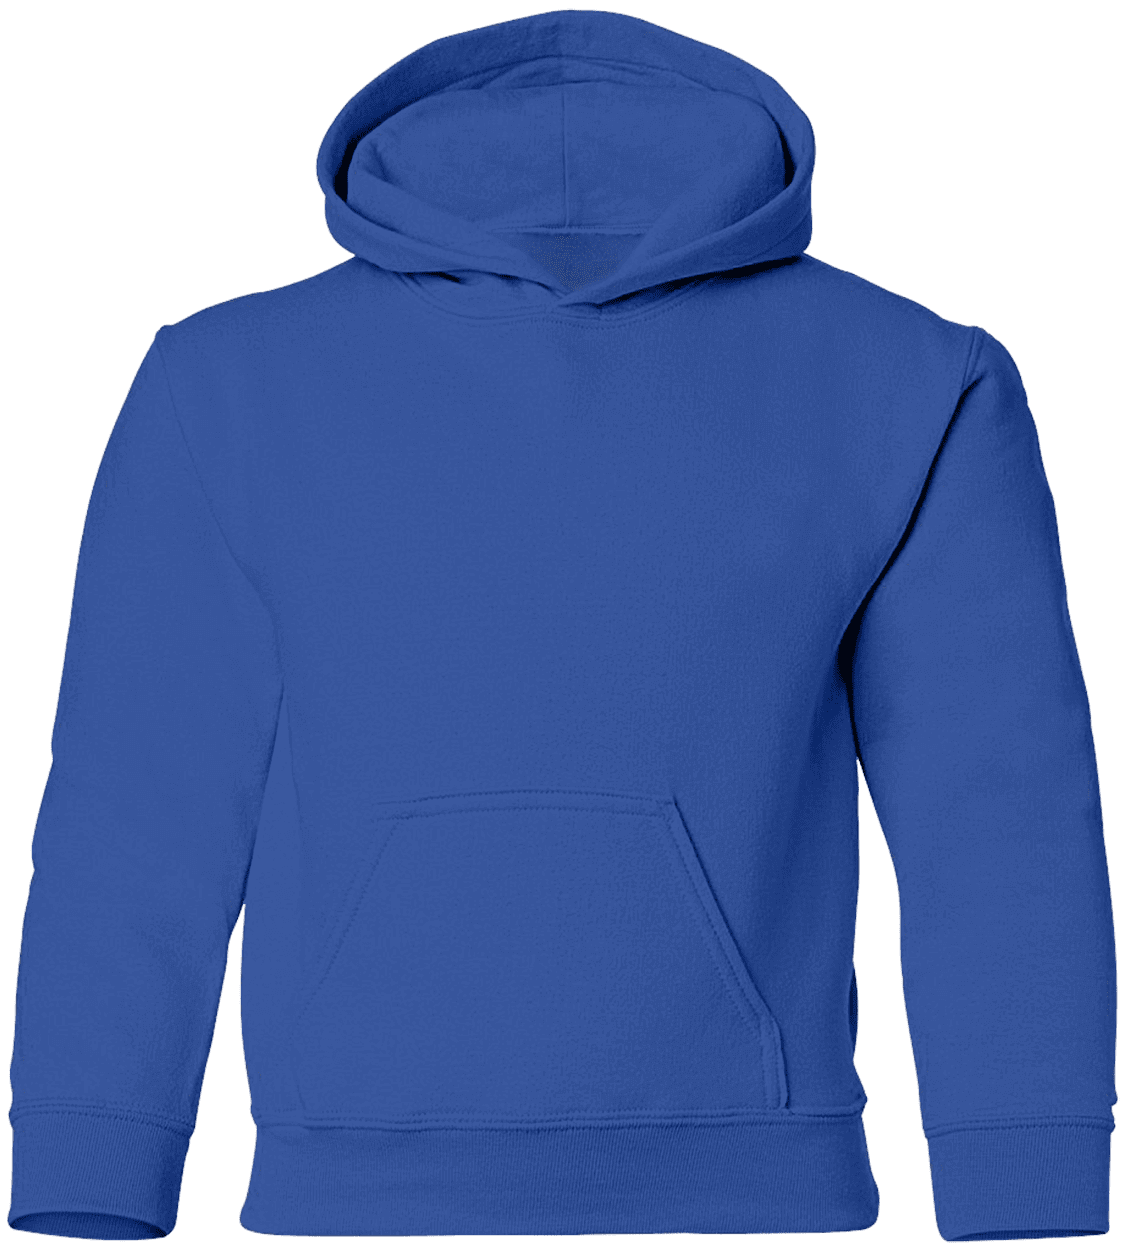 G186 Zip Up Hooded Sweatshirt - Gildan - CustomCat